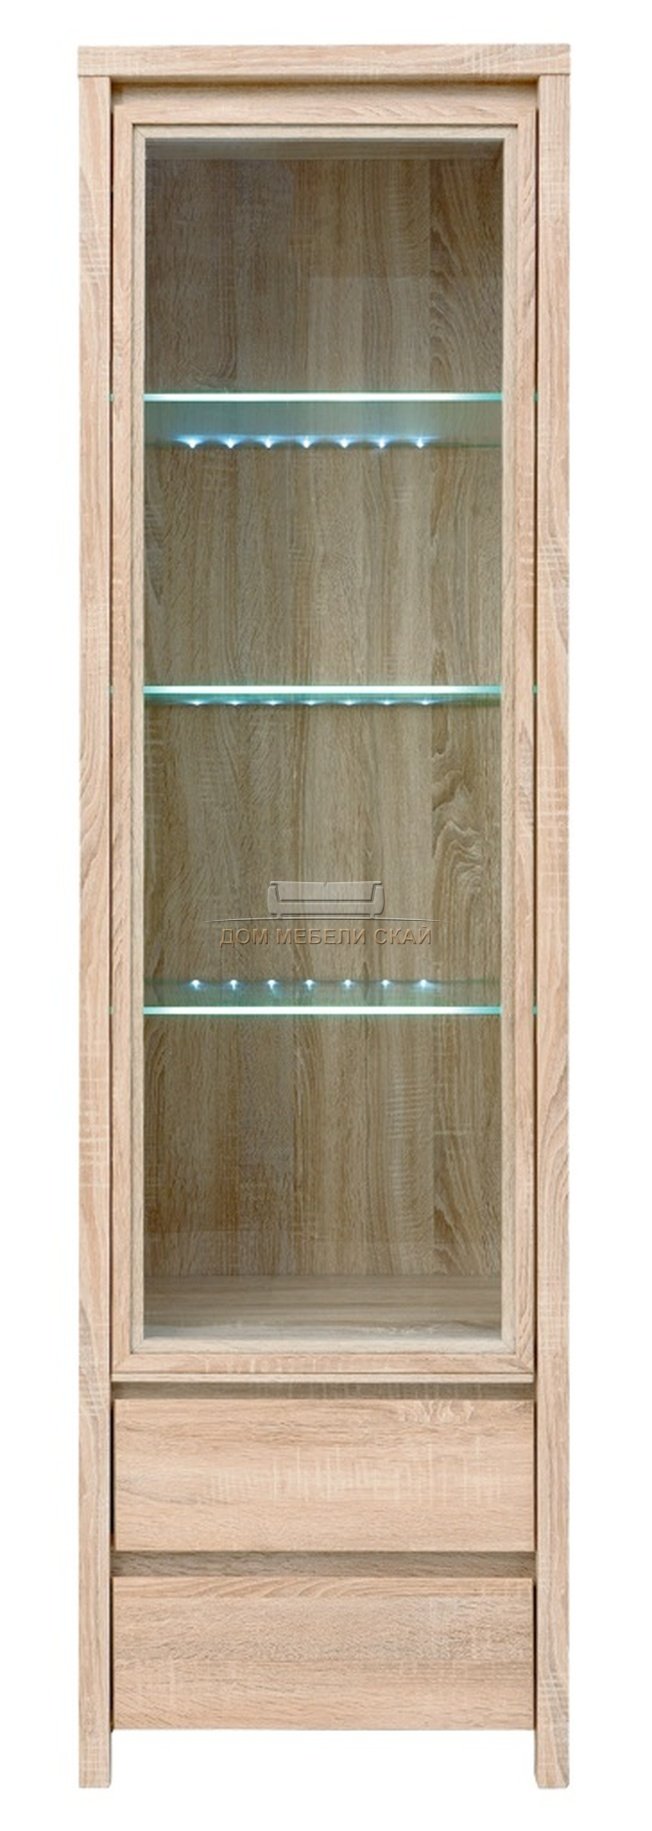 Шкаф-витрина с подсветкой Каспиан REG1W2S, дуб